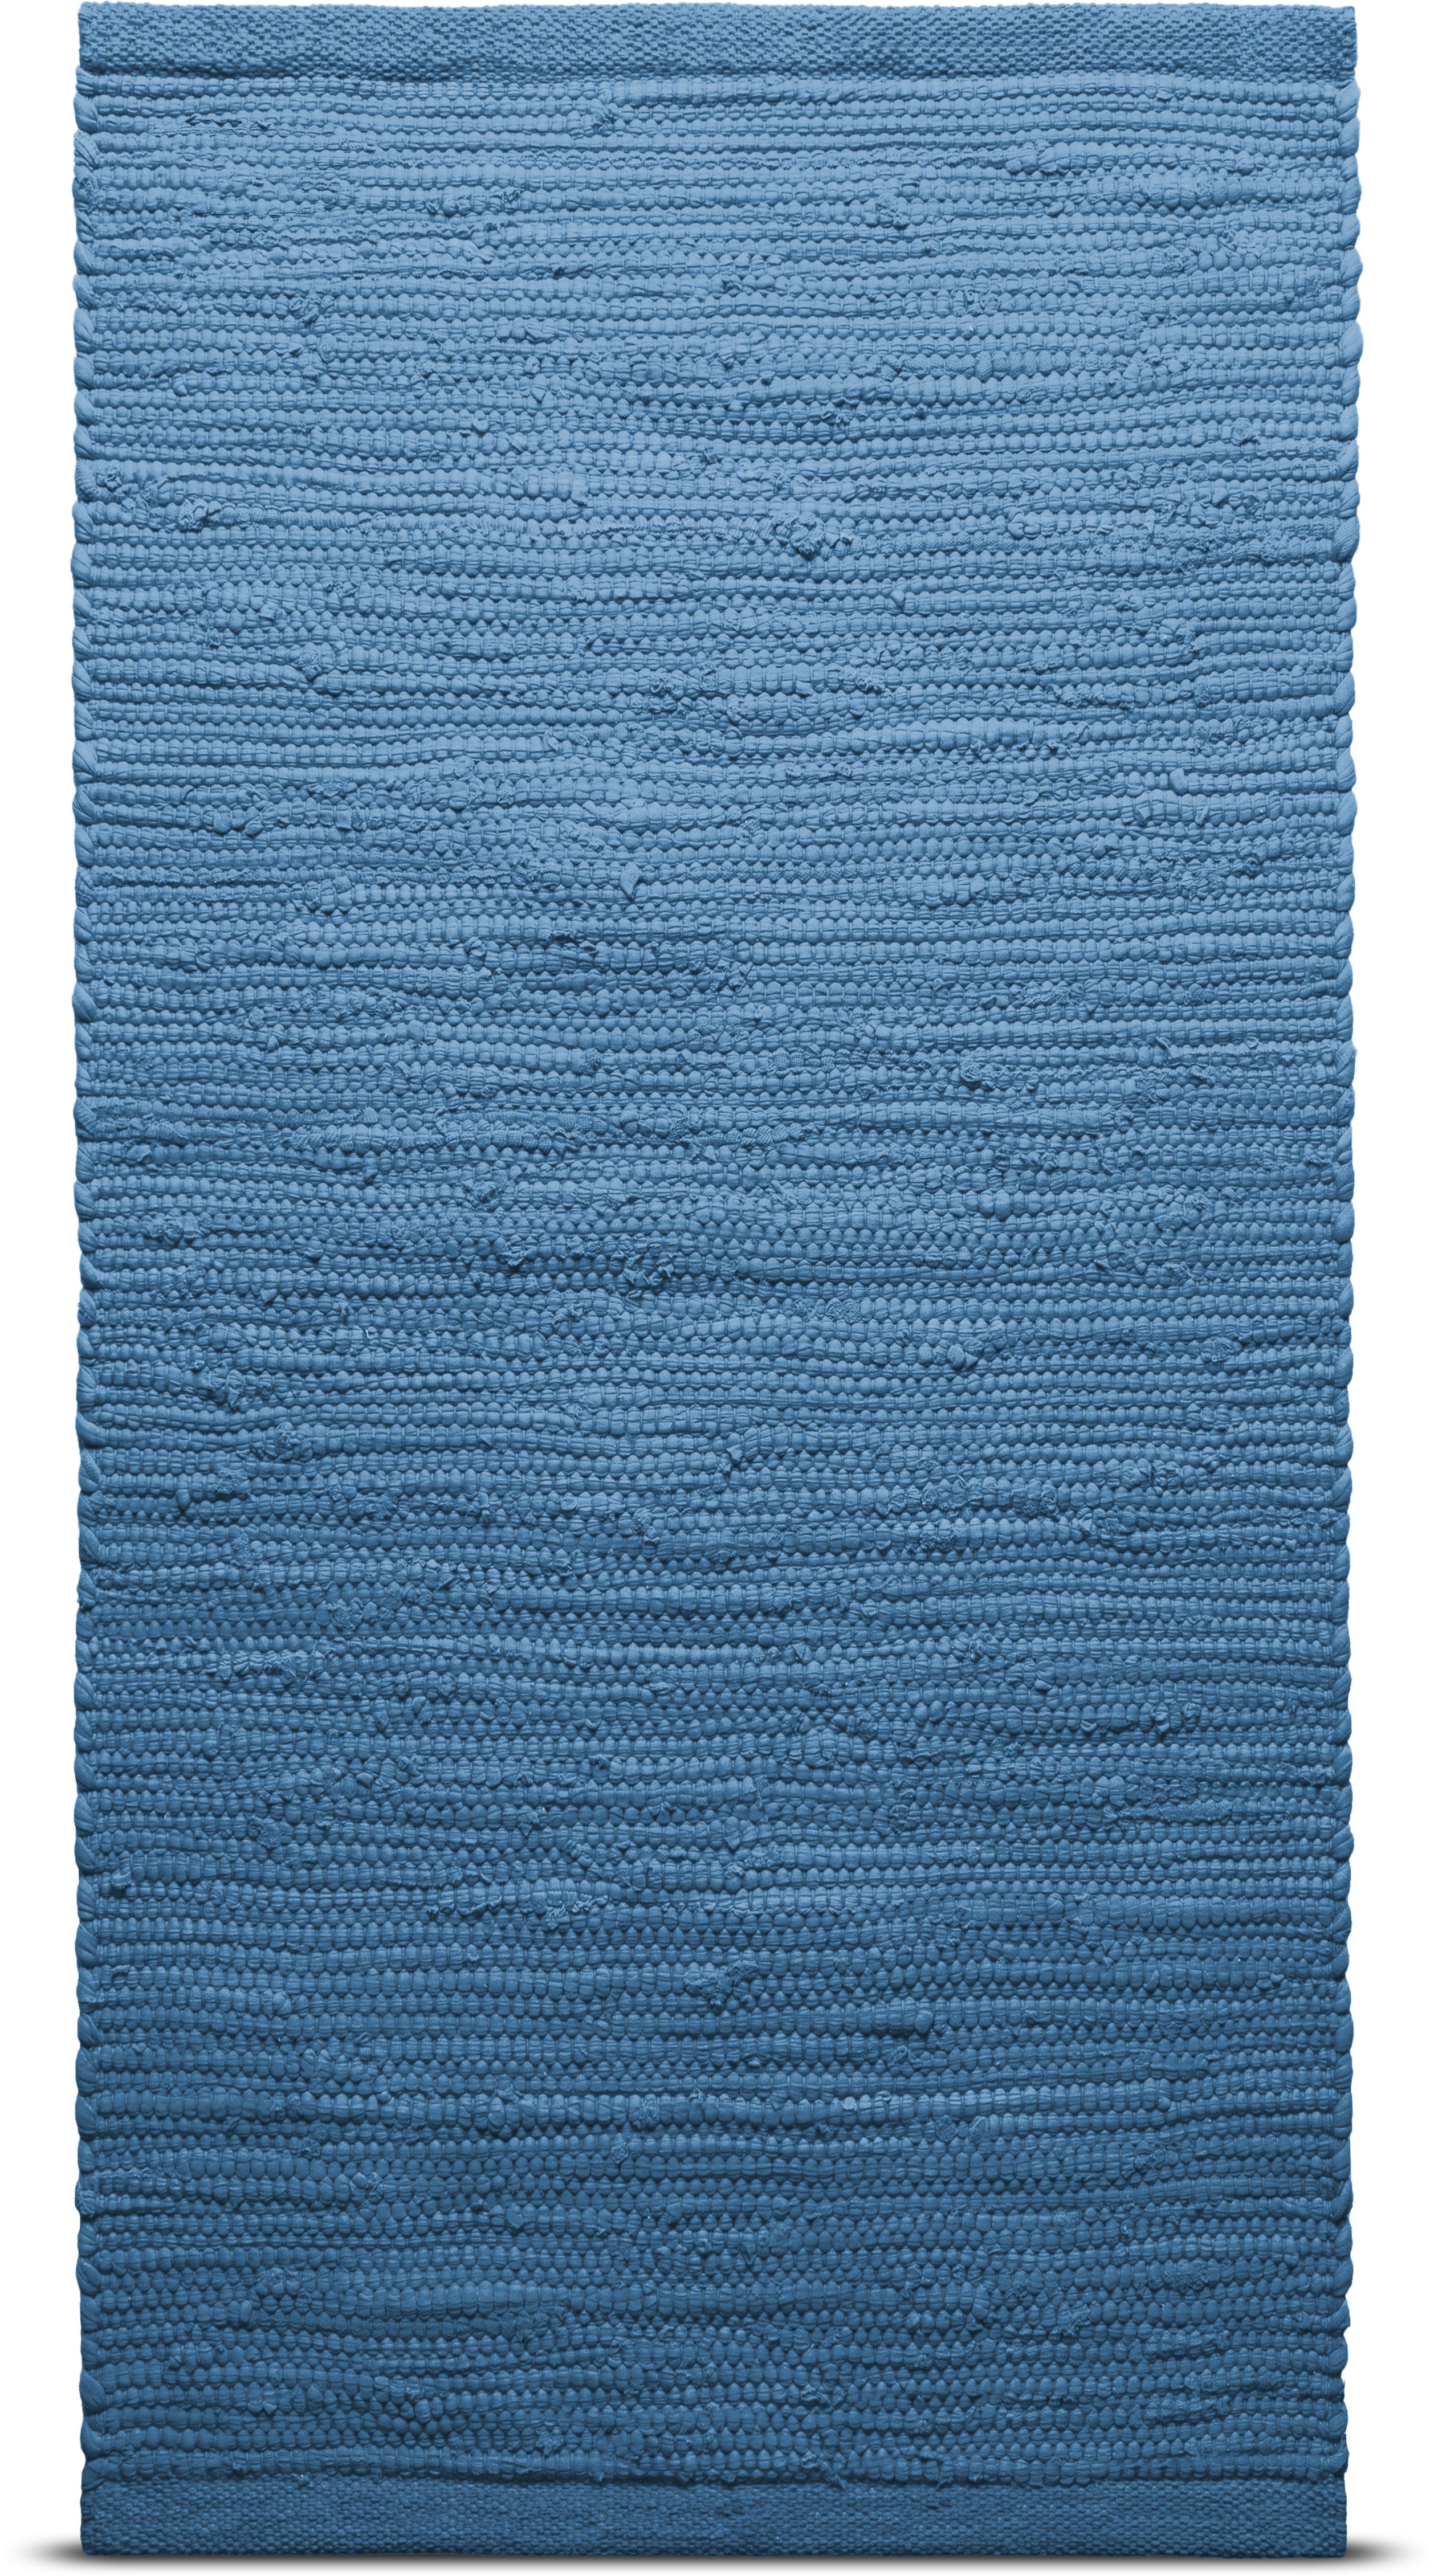 地毯固体棉地毯60 x 90厘米，太平洋